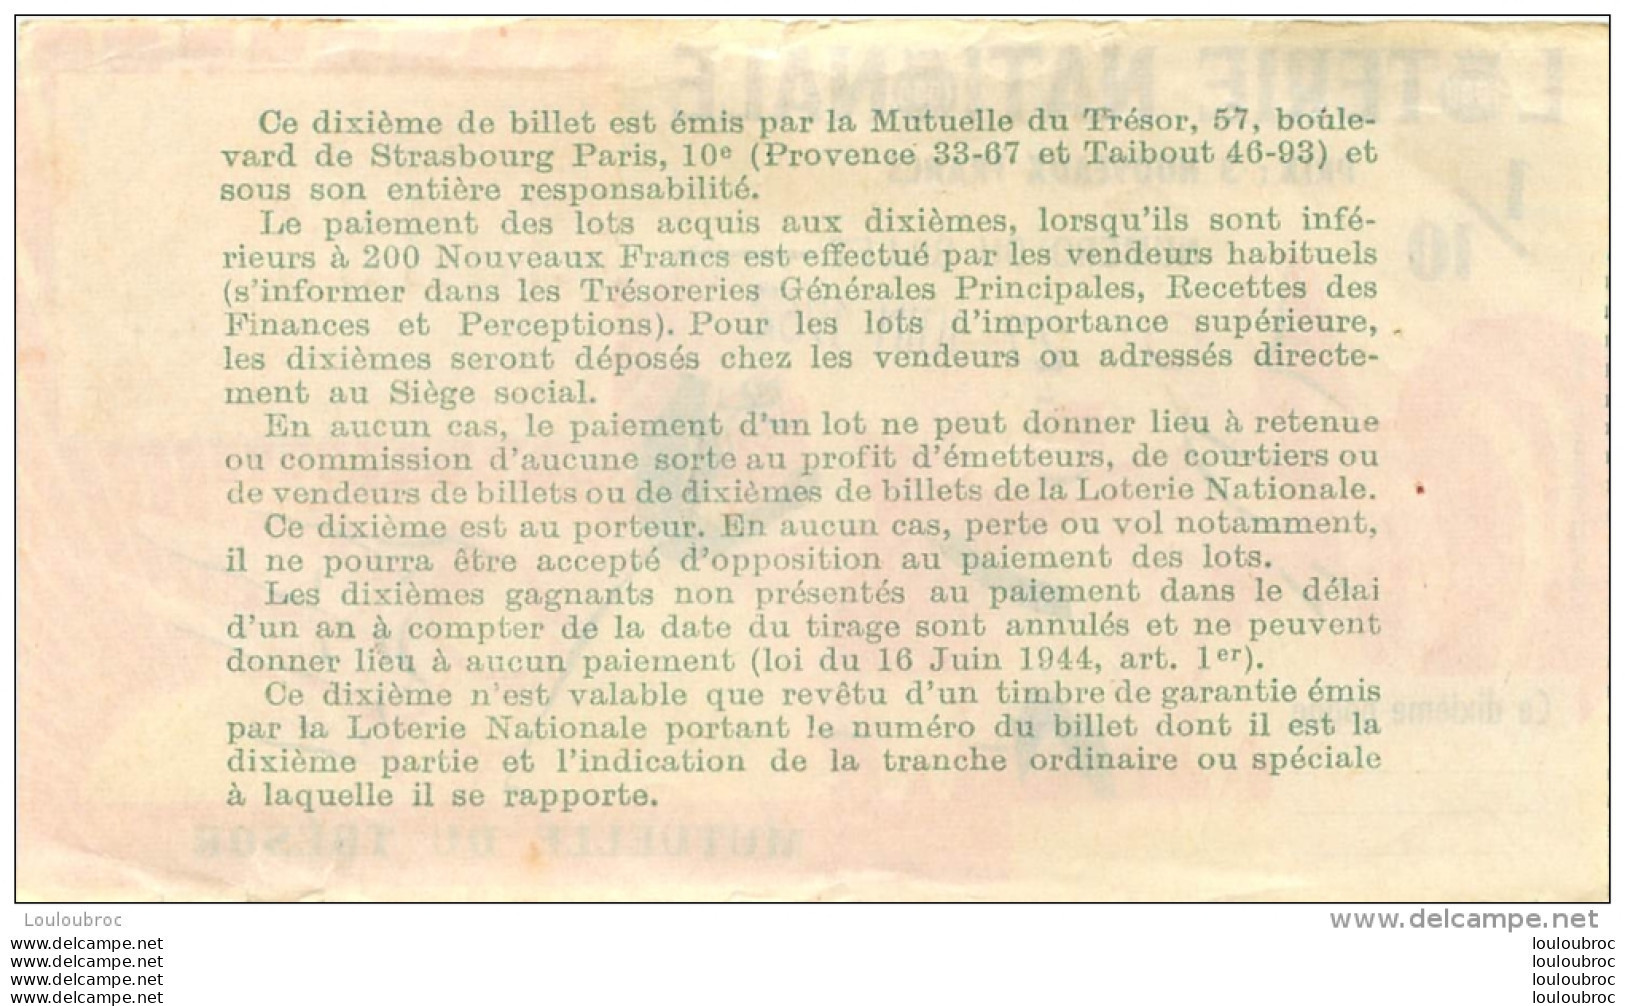 BILLET DE LOTERIE NATIONALE 1962 MUTUELLE DU TRESOR - Lotterielose